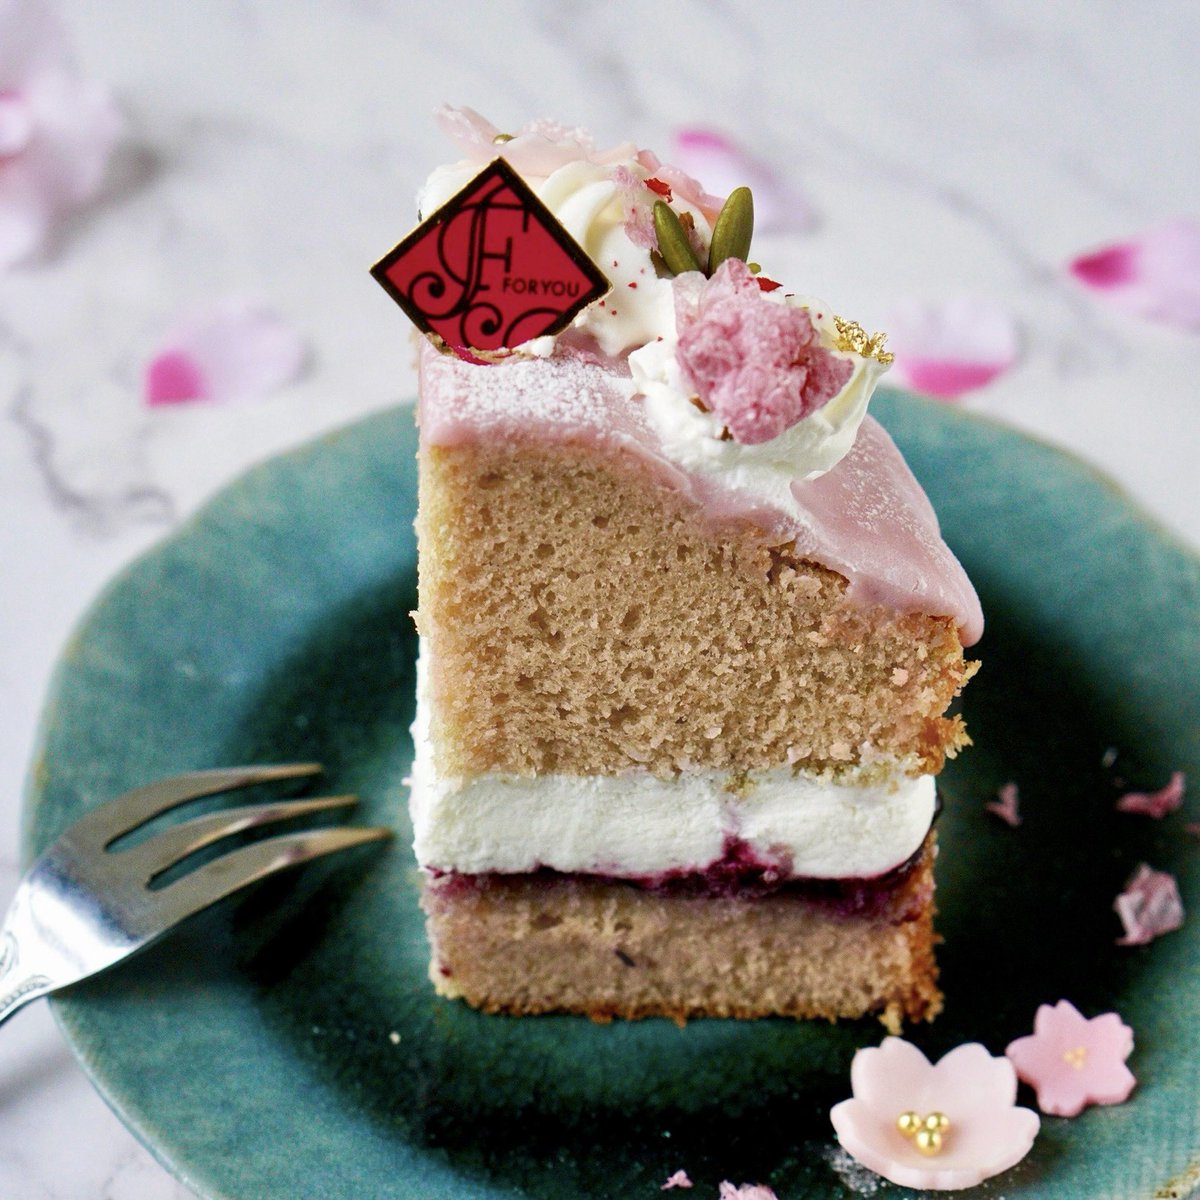 昨日の桜ヴィクトリアケーキの上からと断面写真です🌸✨
桜とベリーの組み合わせおすすめです☺️

#お菓子作り